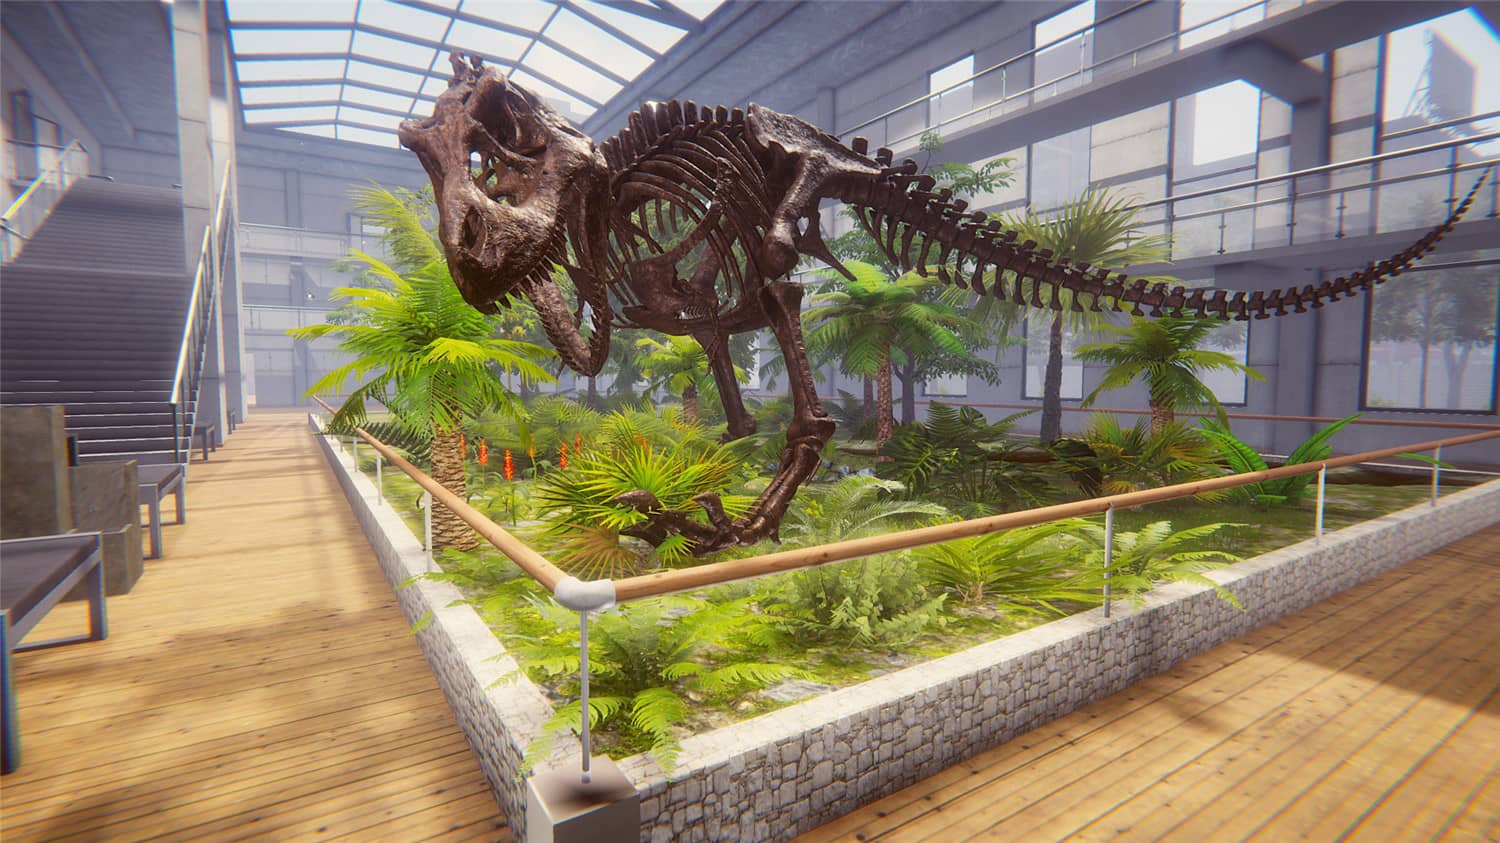 恐龙化石猎人 古生物学家模拟器/Dinosaur Fossil Hunter-零度空间